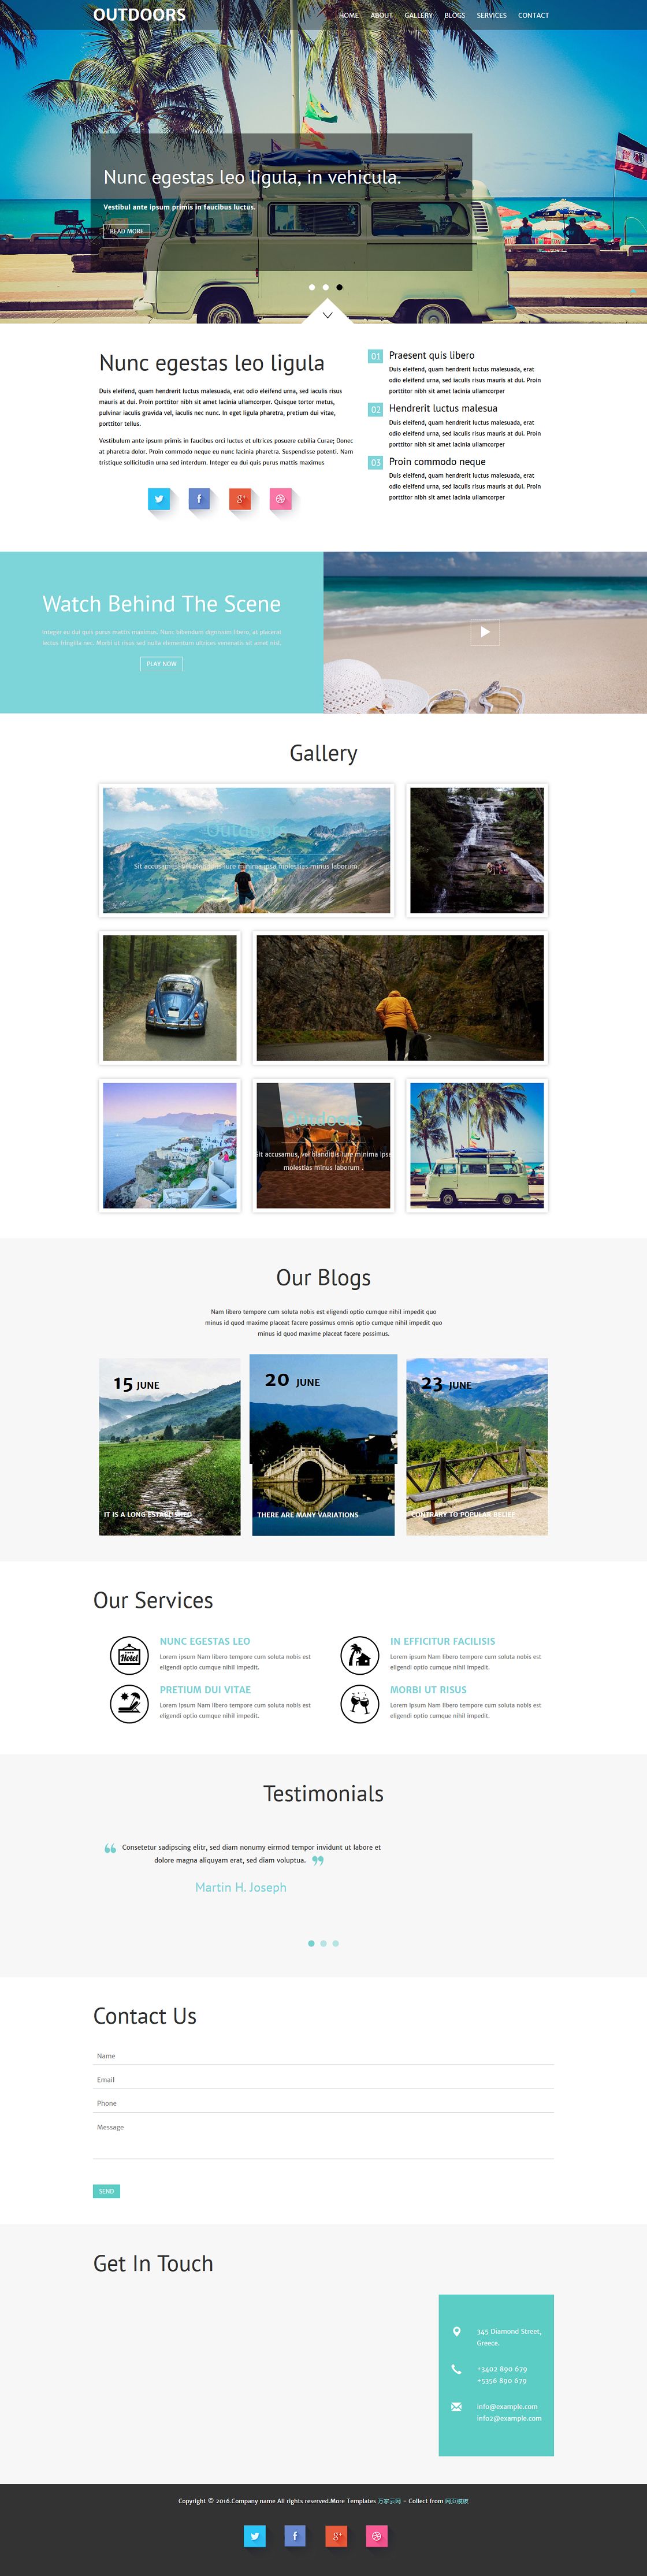 海滨沙滩旅行专题响应式蓝色网站单页模板